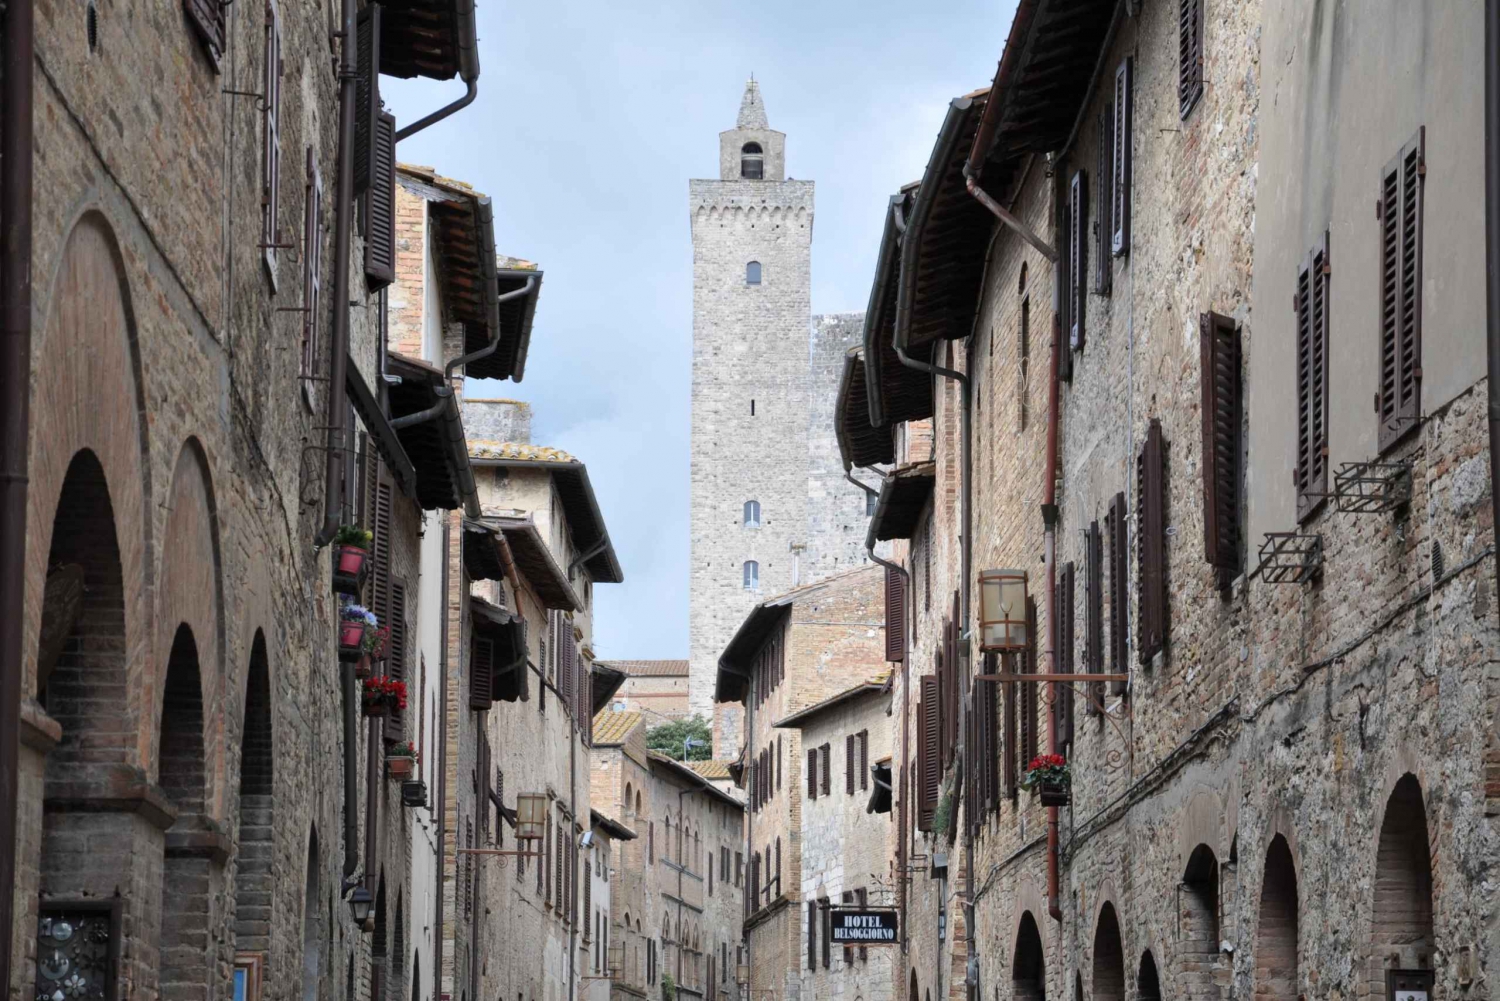 Florens: En privat heldagsutflykt till Chianti och San Gimignano